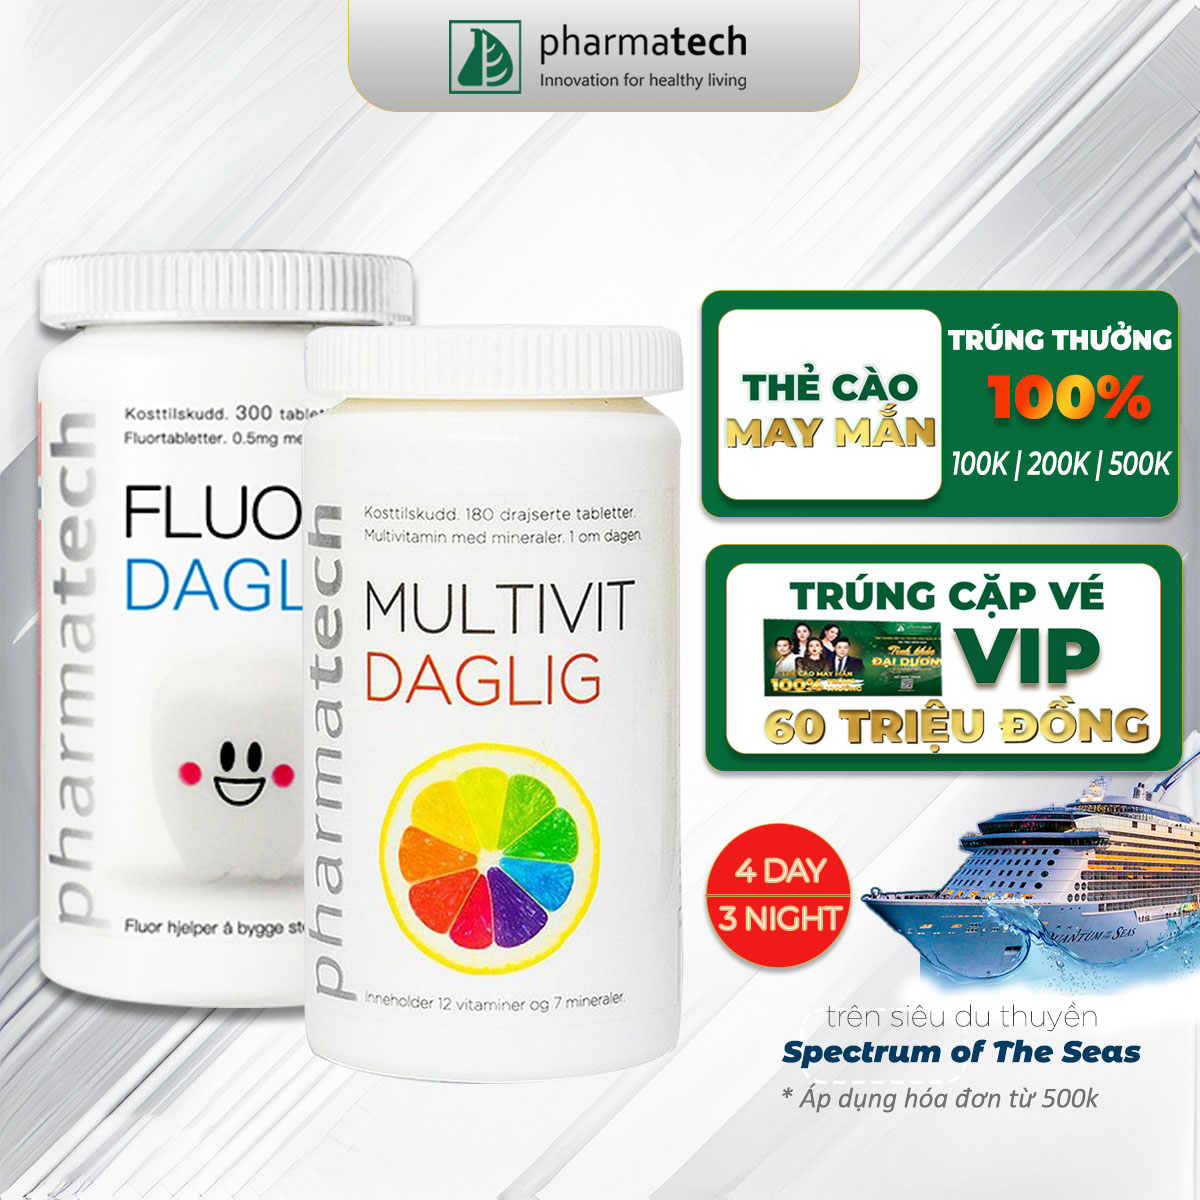 Multivitamins daglig Fluor davlig pharmaceutical tablet combo